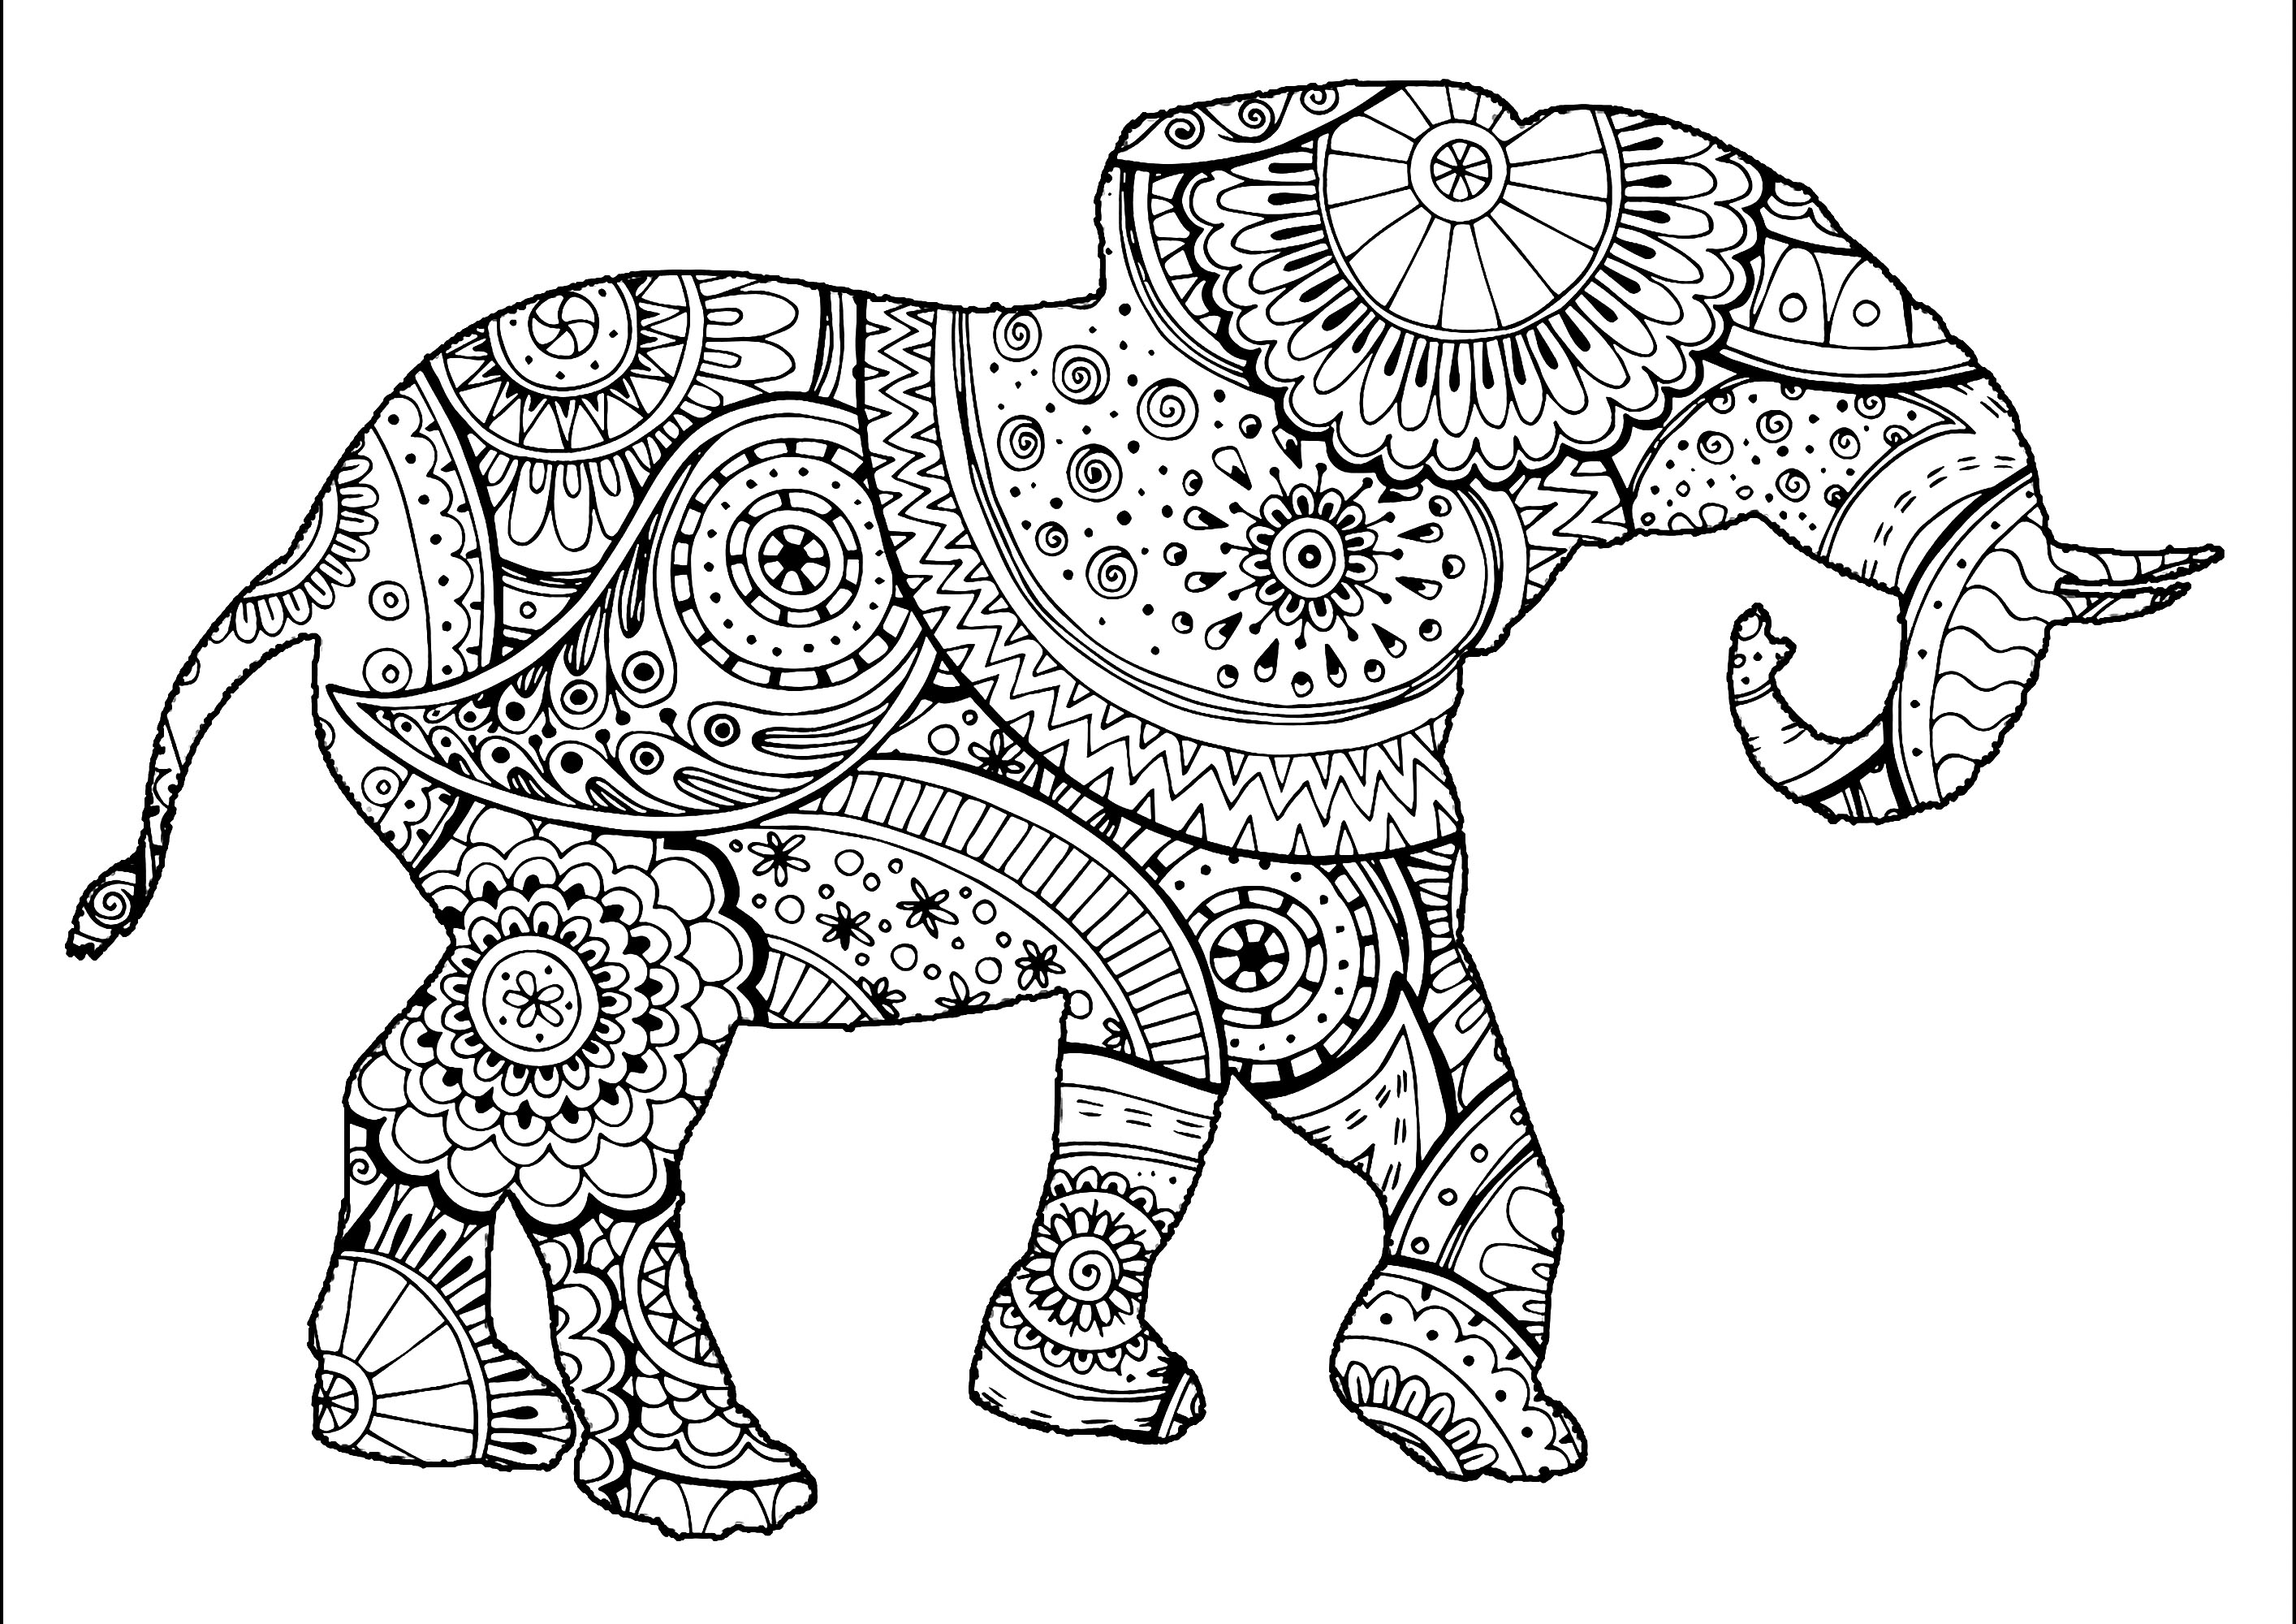 Elefante para colorir com motivos Zentangle e Paisley. Os motivos Zentangle e Paisley que compõem esta silhueta de elefante são muito pormenorizados e variados. Explore-os variando as cores.Pode dar asas à sua imaginação e criar combinações de cores e padrões muito originais, Artista : Art'Isabelle